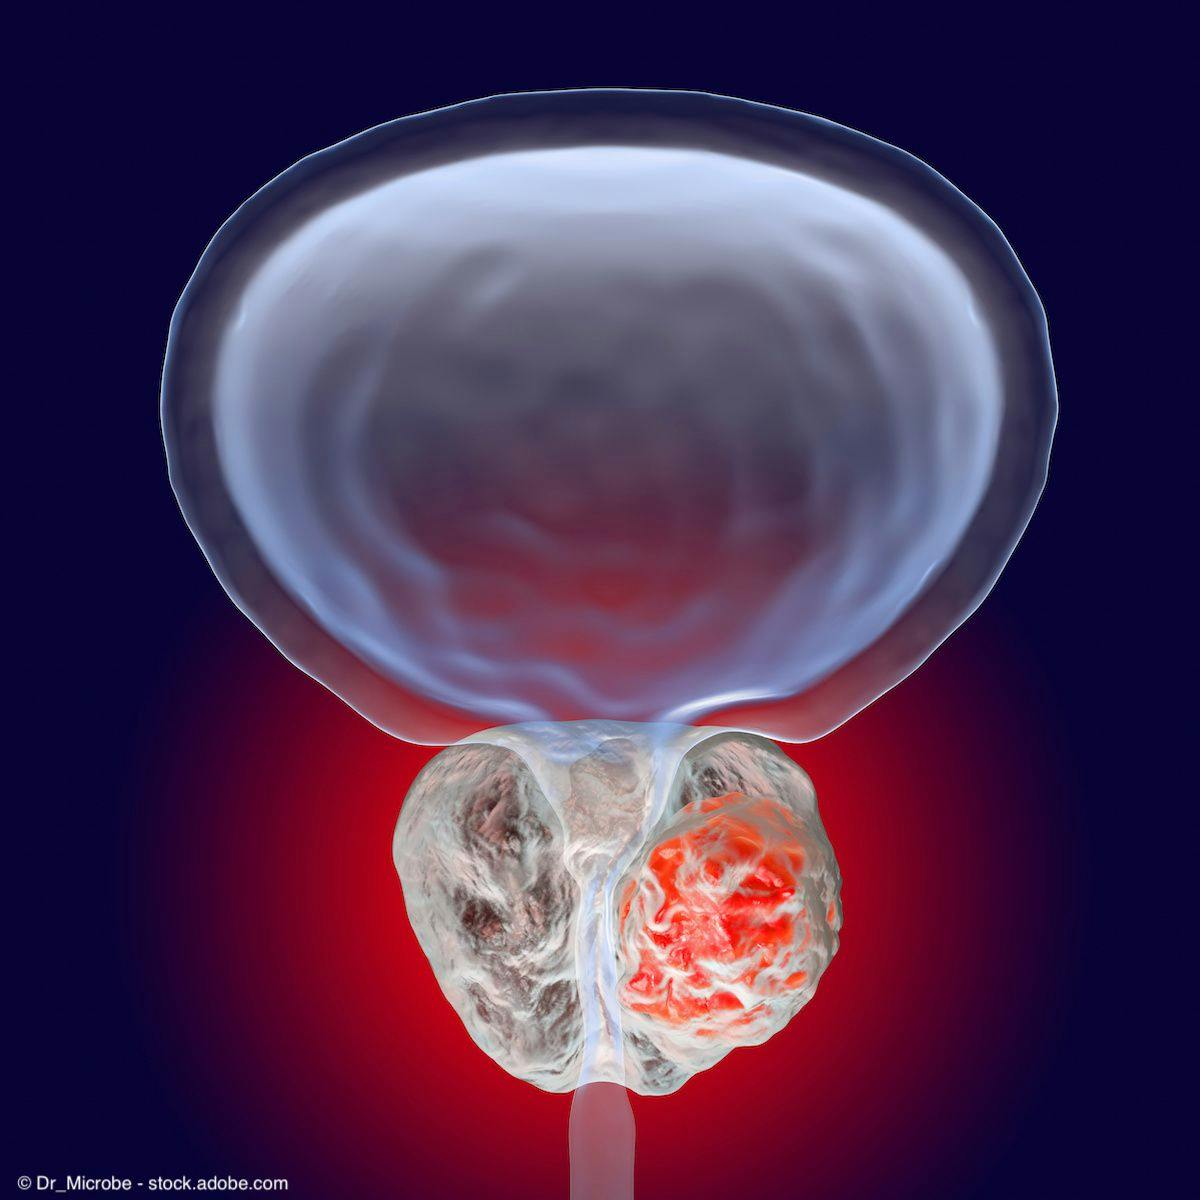 Illustration of tumor in prostate | Image Credit: © Dr_Microbe - stock.adobe.com